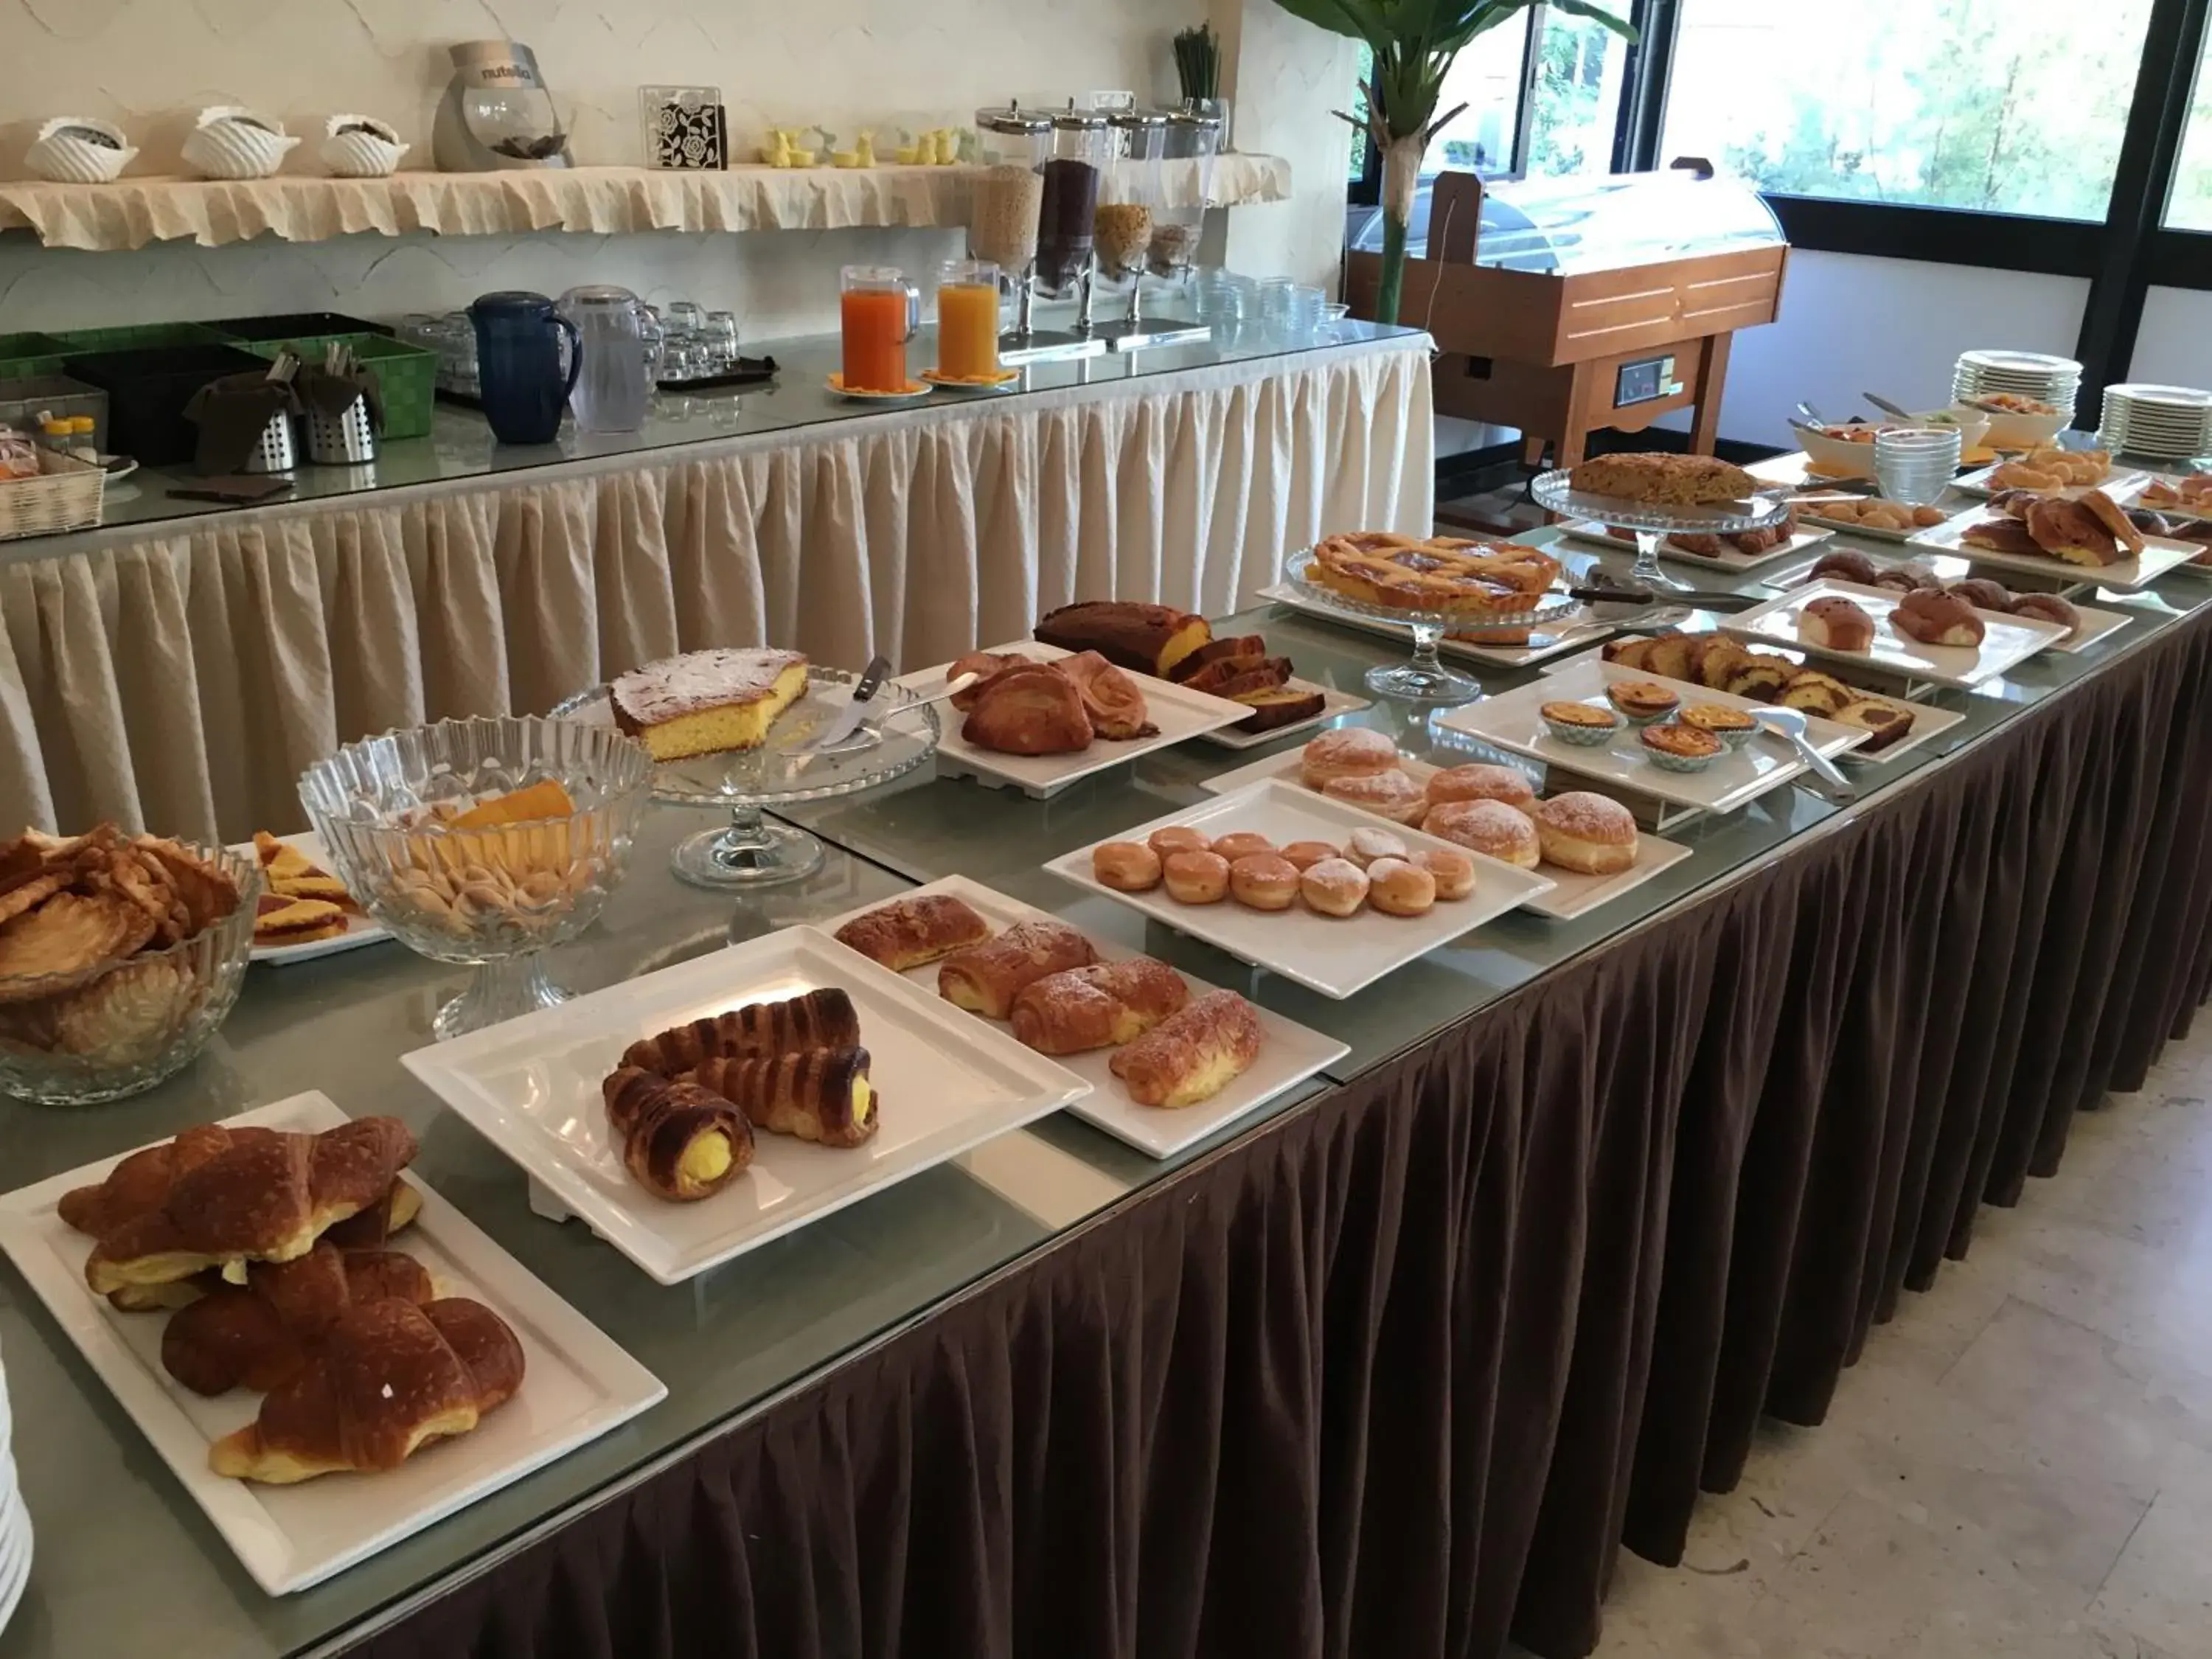 Buffet breakfast in Hotel Granada